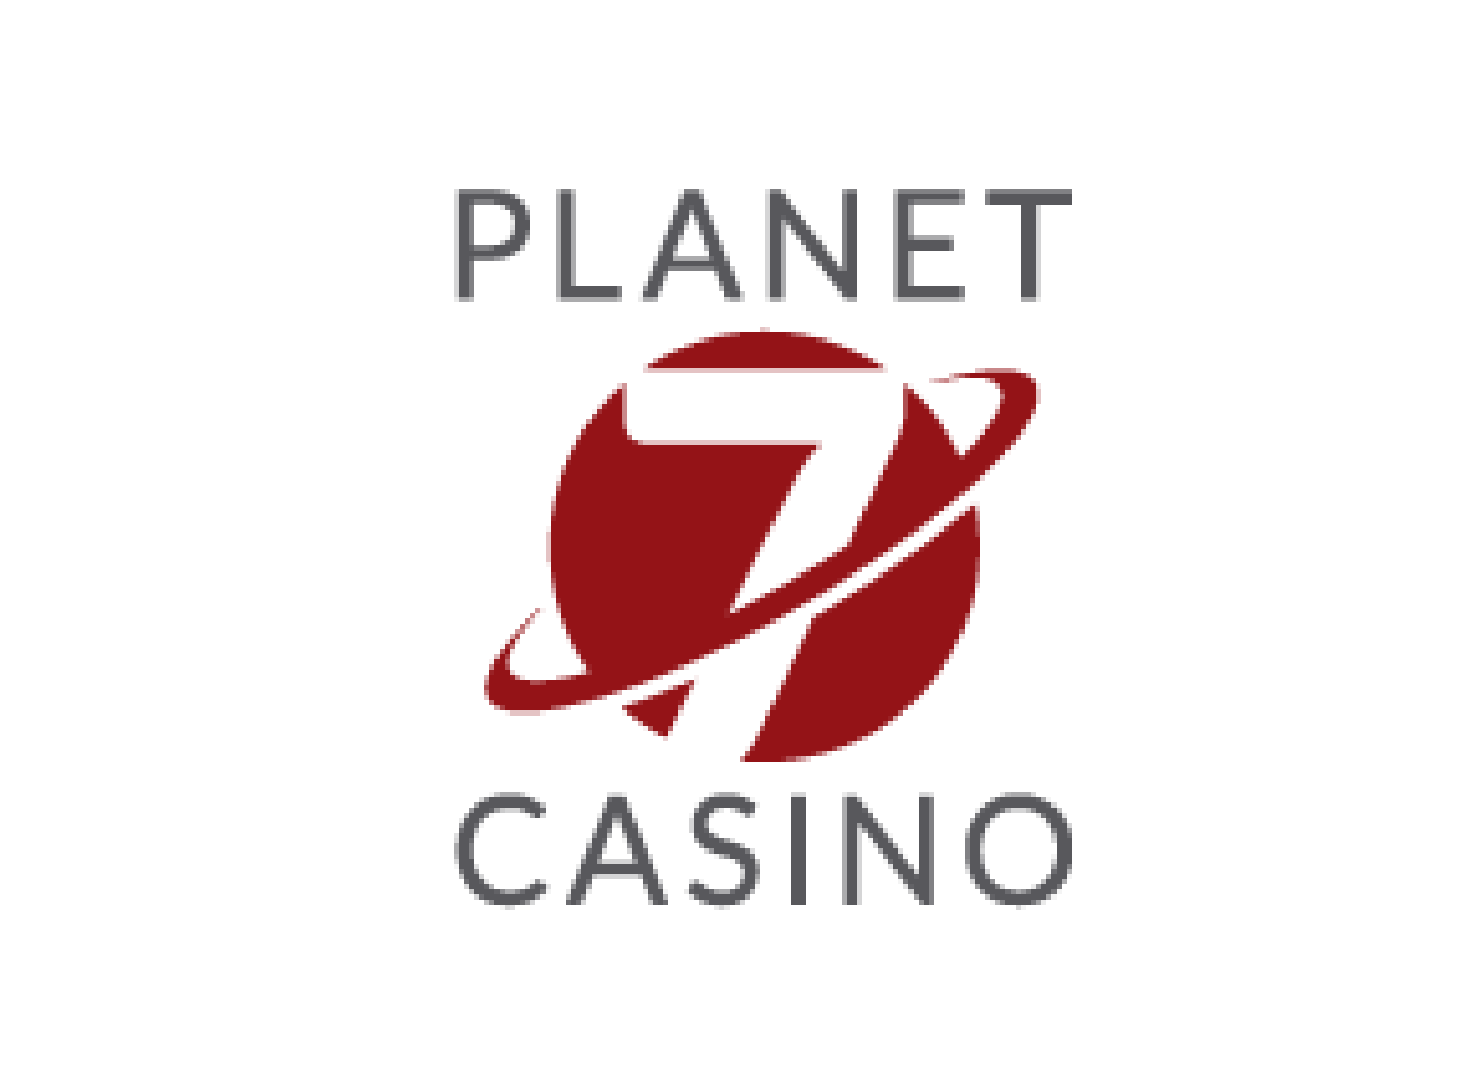 planet 7 casino bonus codes october 2017